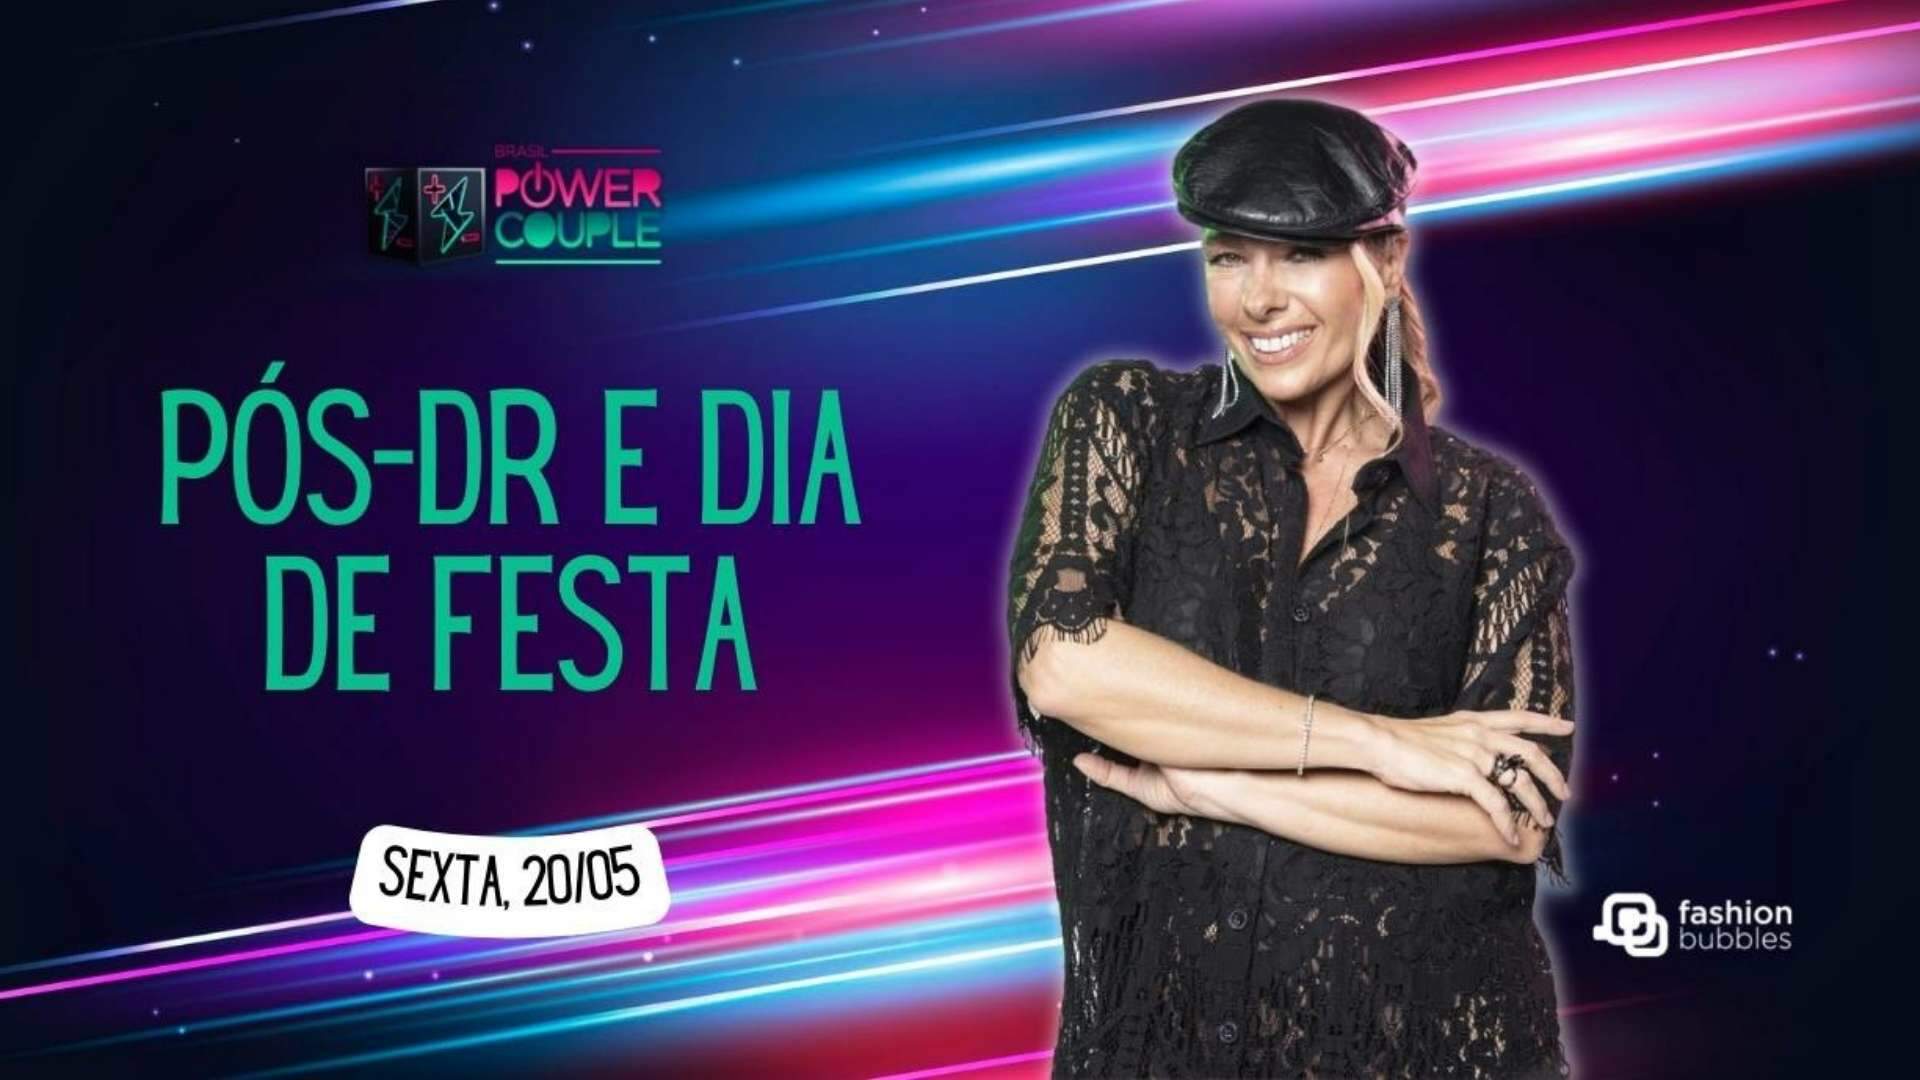 Power Couple Brasil: Tema da festa é revelado e casais comemoram: “Novidade incrível!” - Metropolitana FM